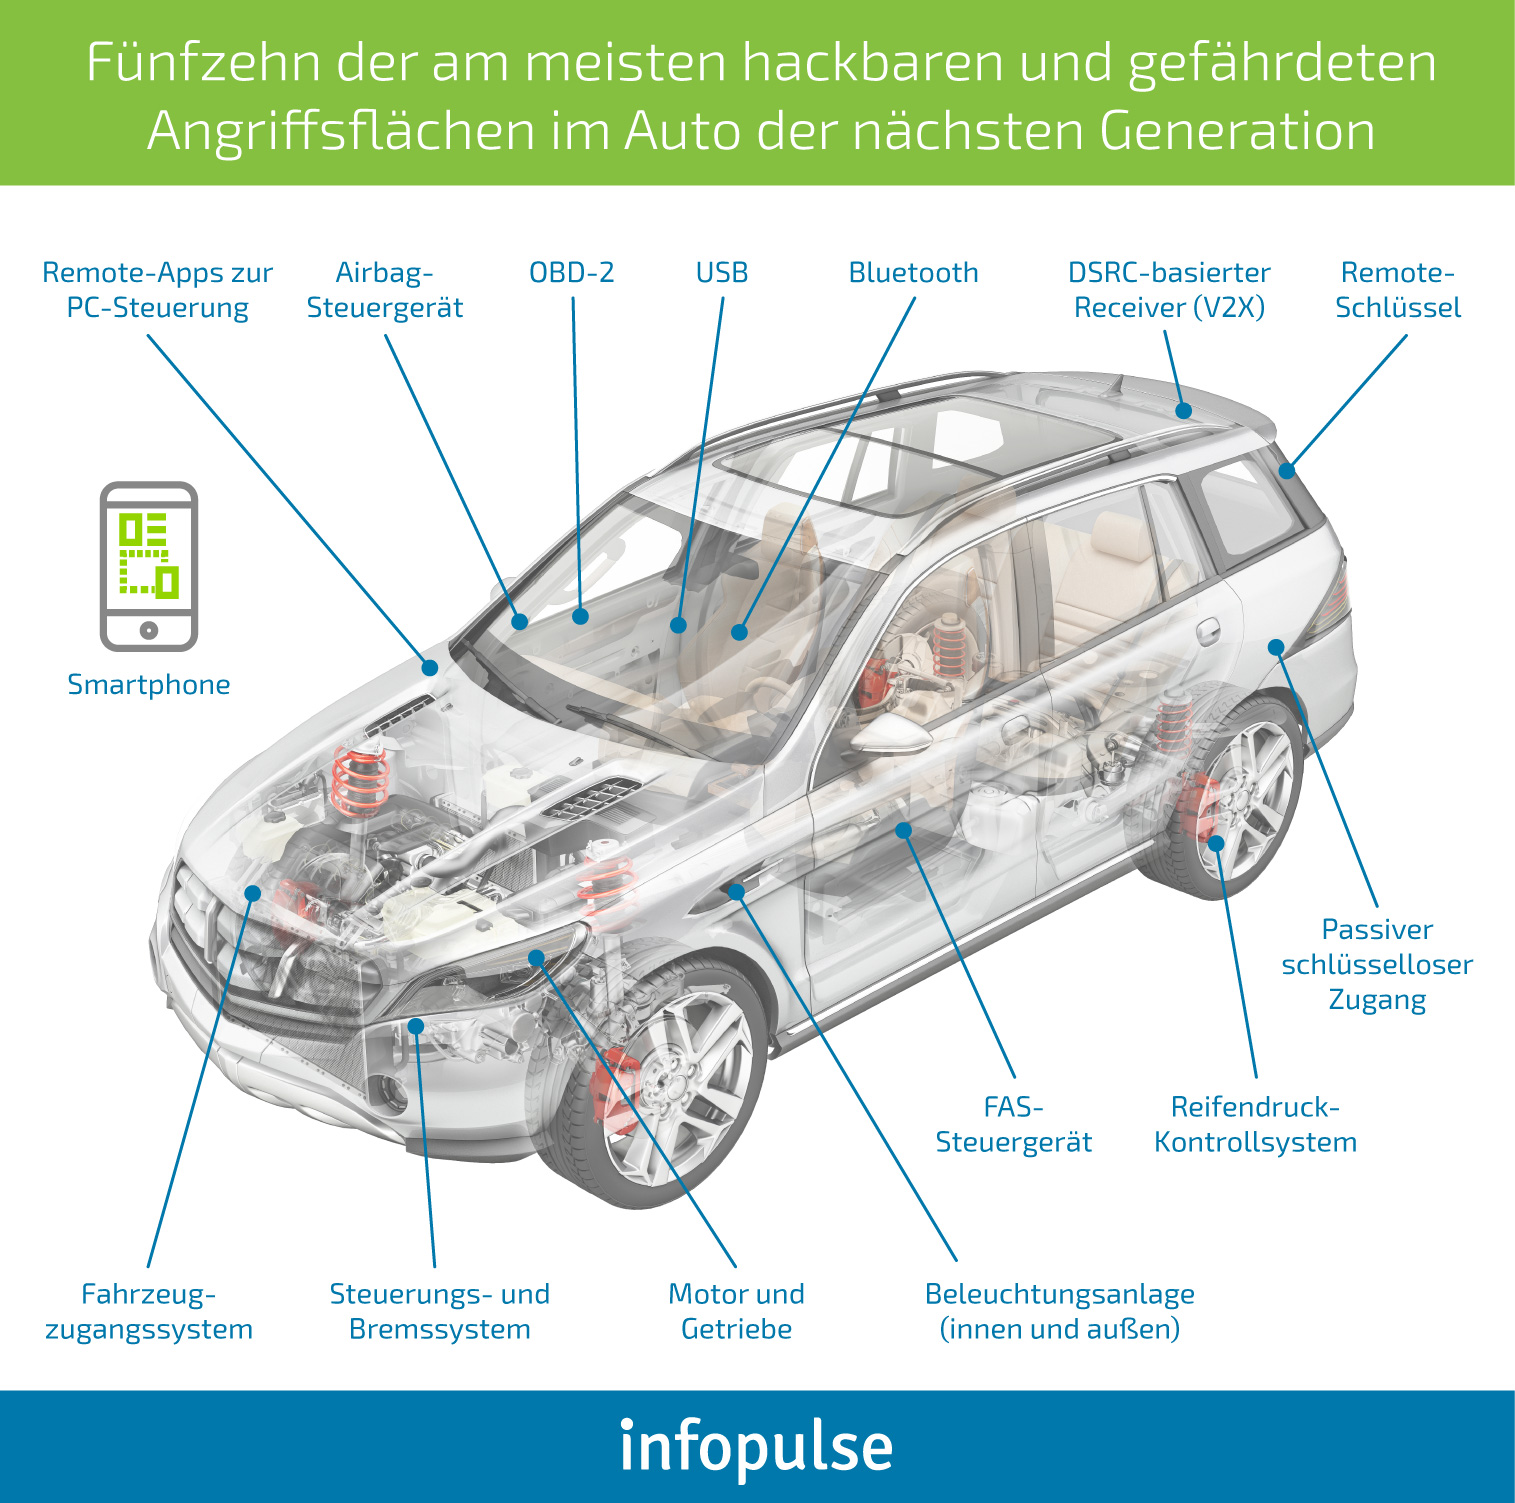 Wie Sie die Cybersicherheit in den Fahrzeugen der nächsten Generation sicherstellen können [Teil 1] - Infopulse - 866062